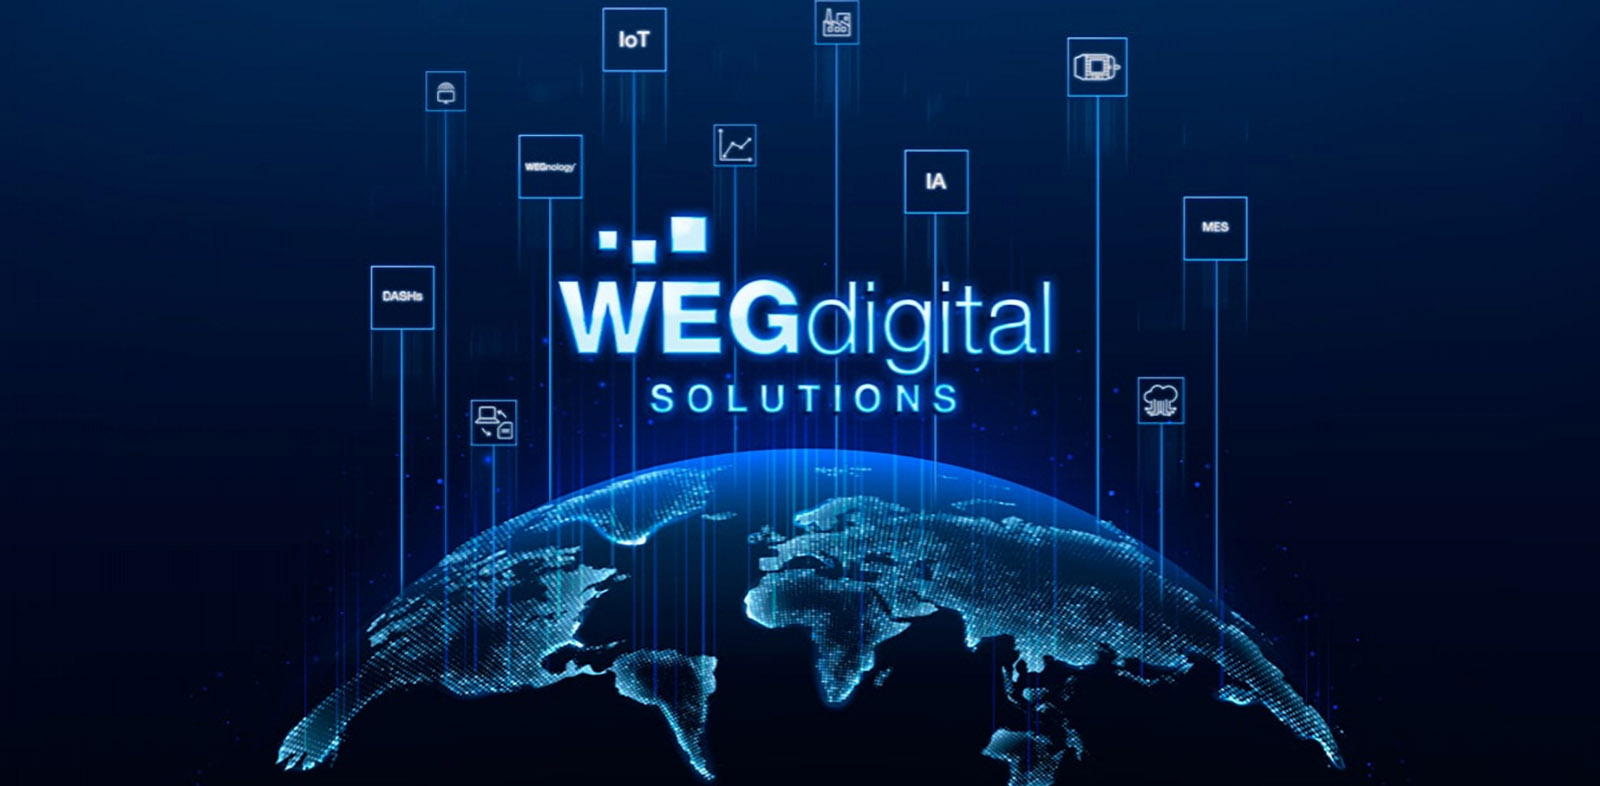 WEG Digital é a solução ideal para quem buscam uma gestão eficiente e inteligente nas suas operações